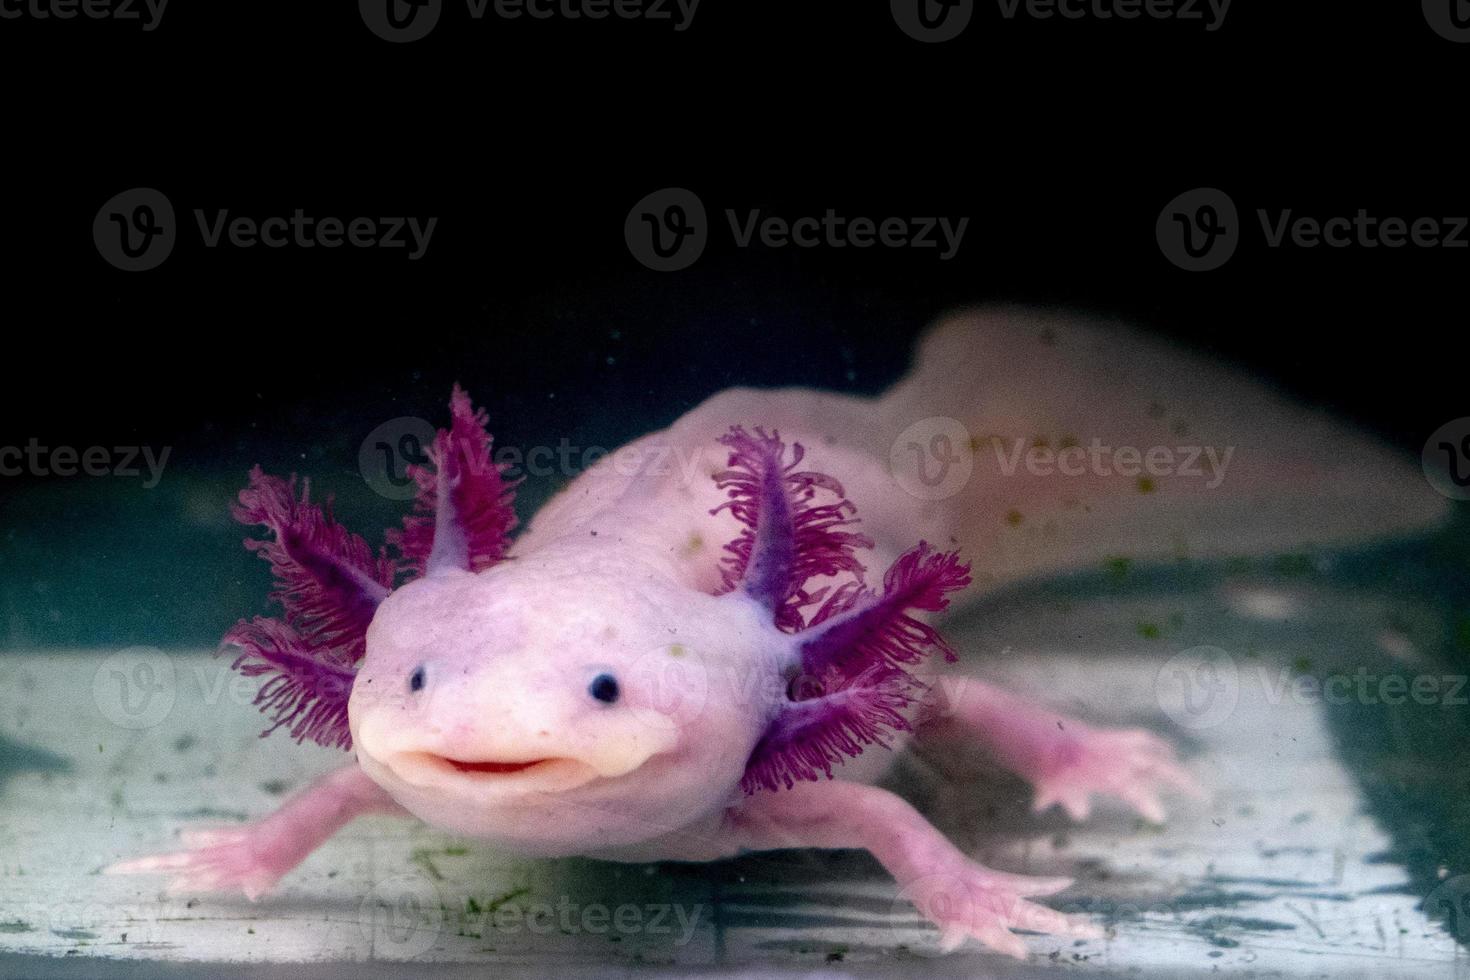 axolotl mexikansk salamander porträtt under vattnet foto